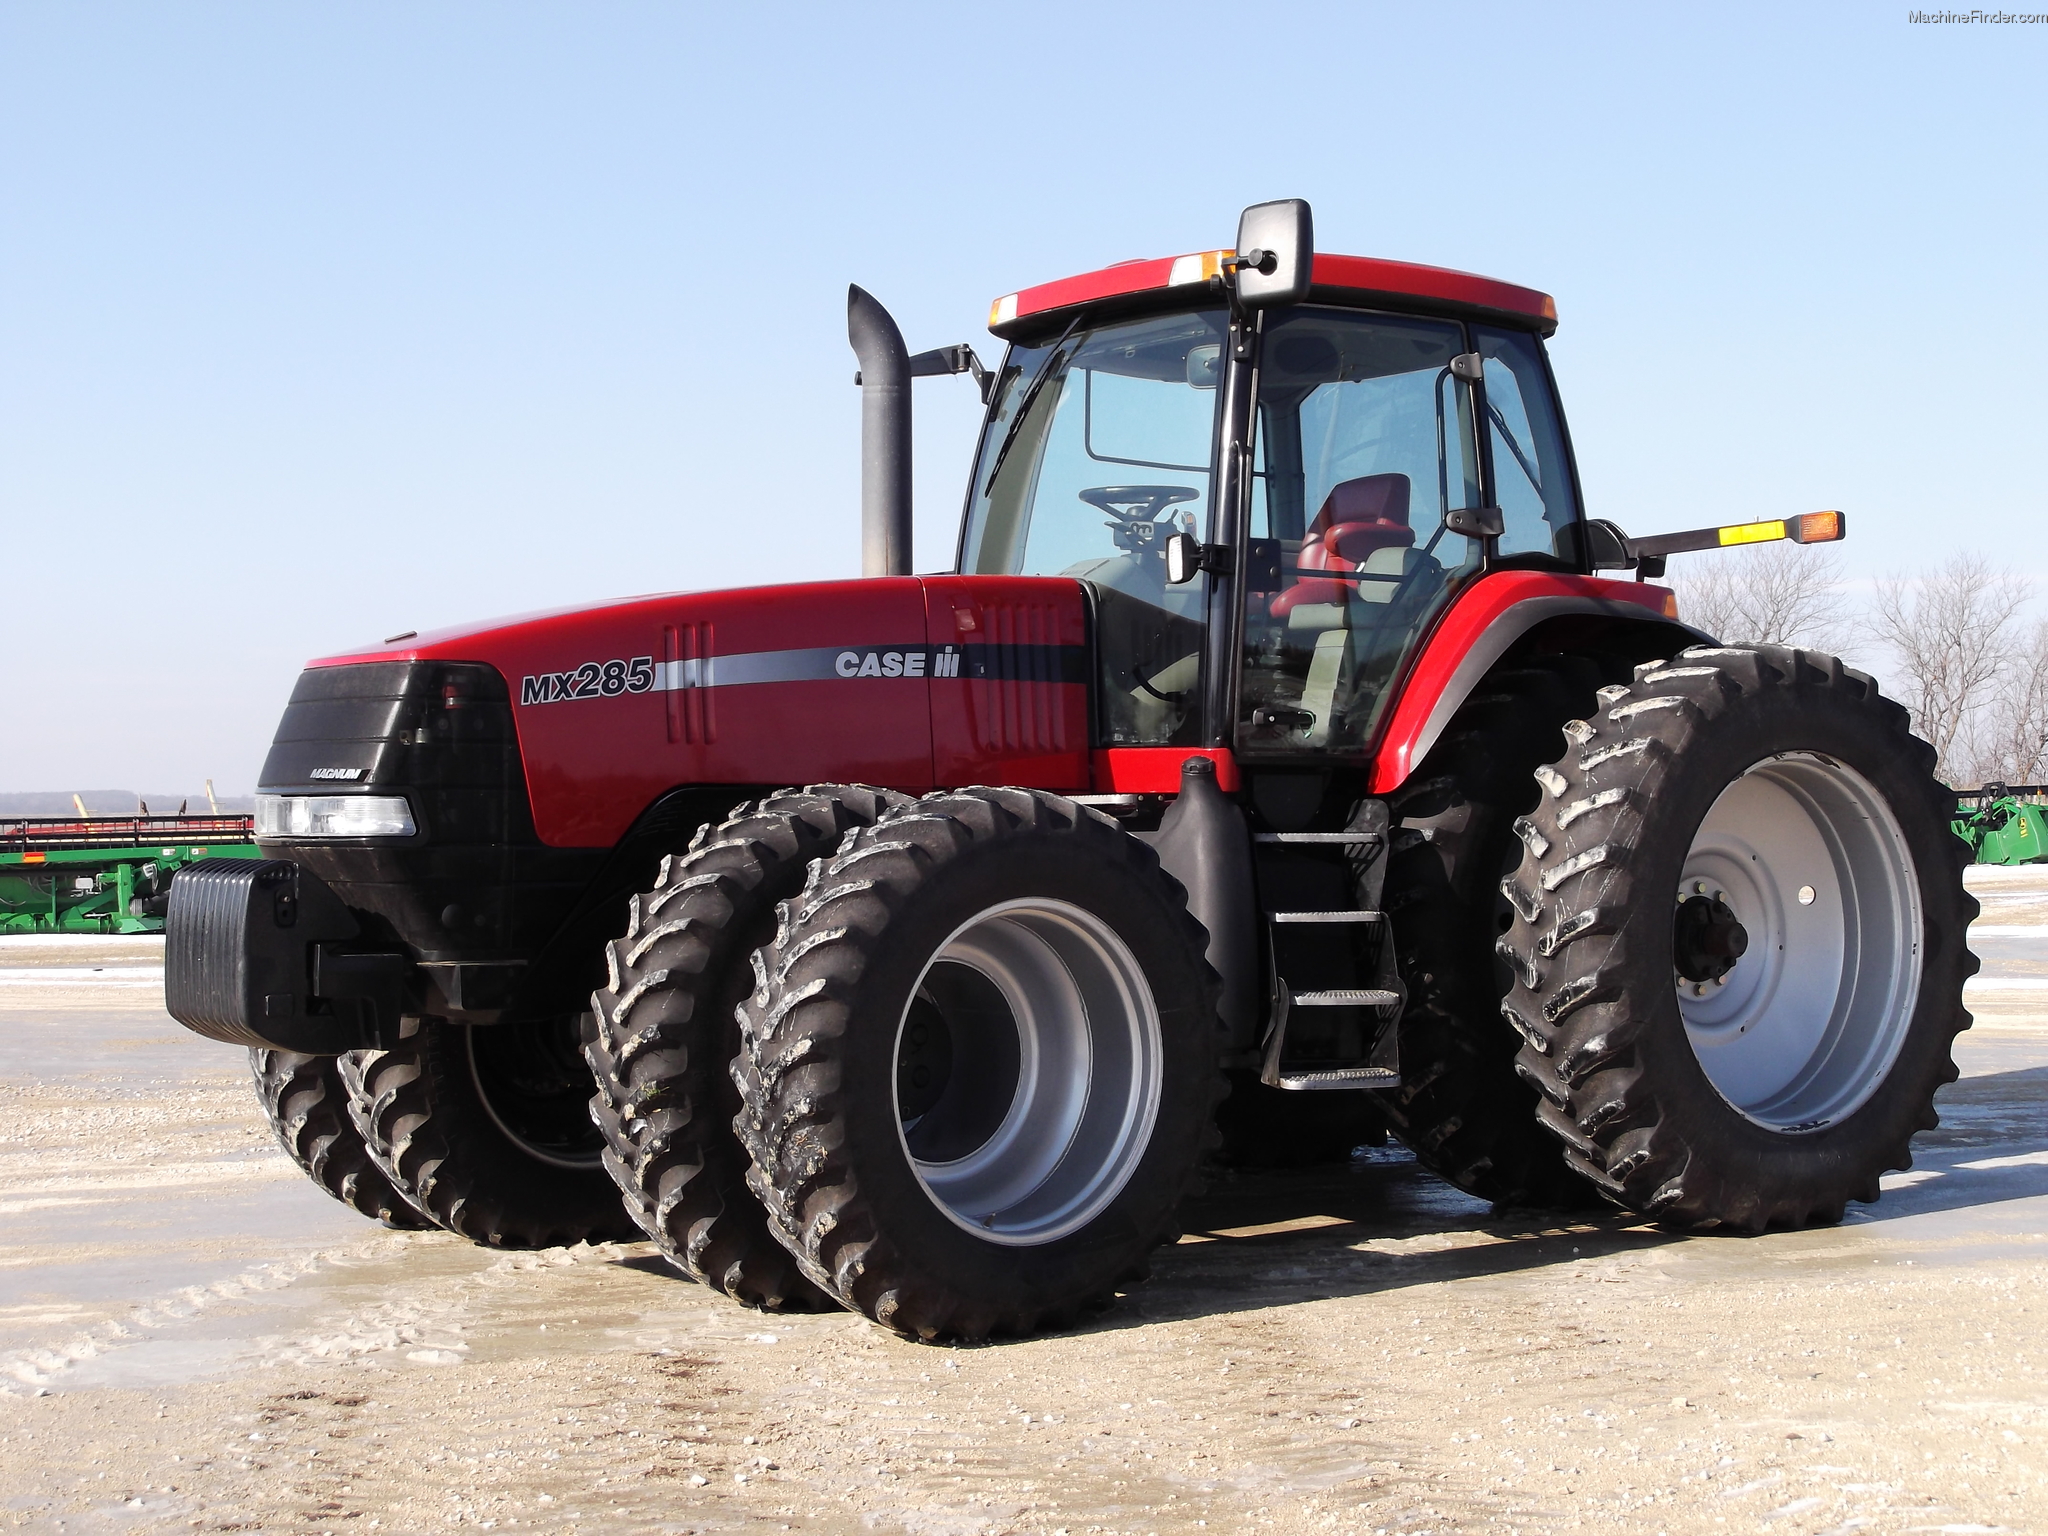 2005 Case IH MX285 Tractors - Row Crop (+100hp) - John Deere ...